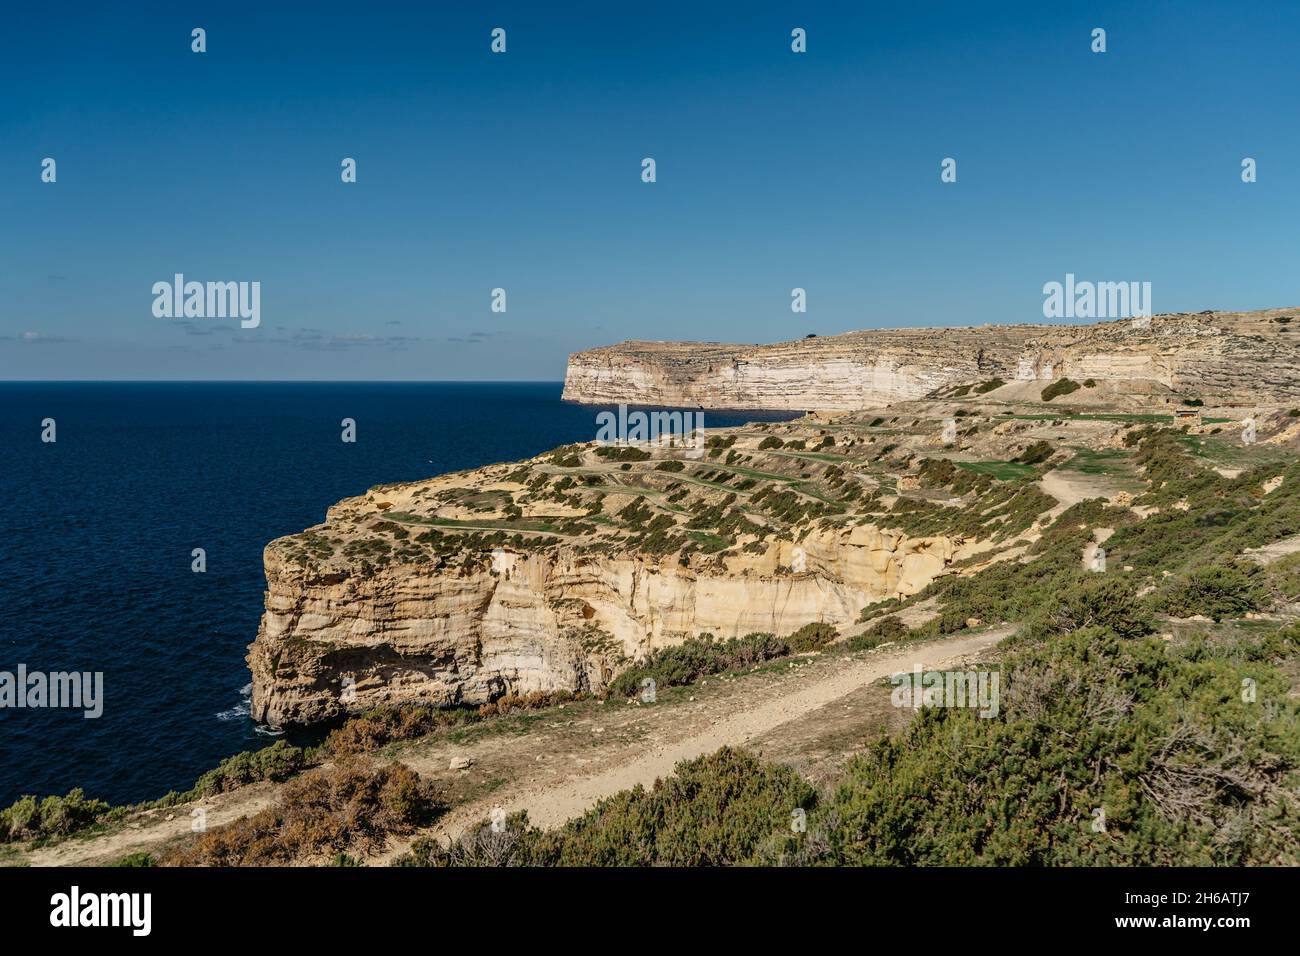 Felsige Kalksteinküste der Insel Gozo und Mittelmeer mit türkisblauem Wasser und Höhlen. Grüne terrassenförmige Felder, Hügel. Beliebte Wanderklippe Stockfoto